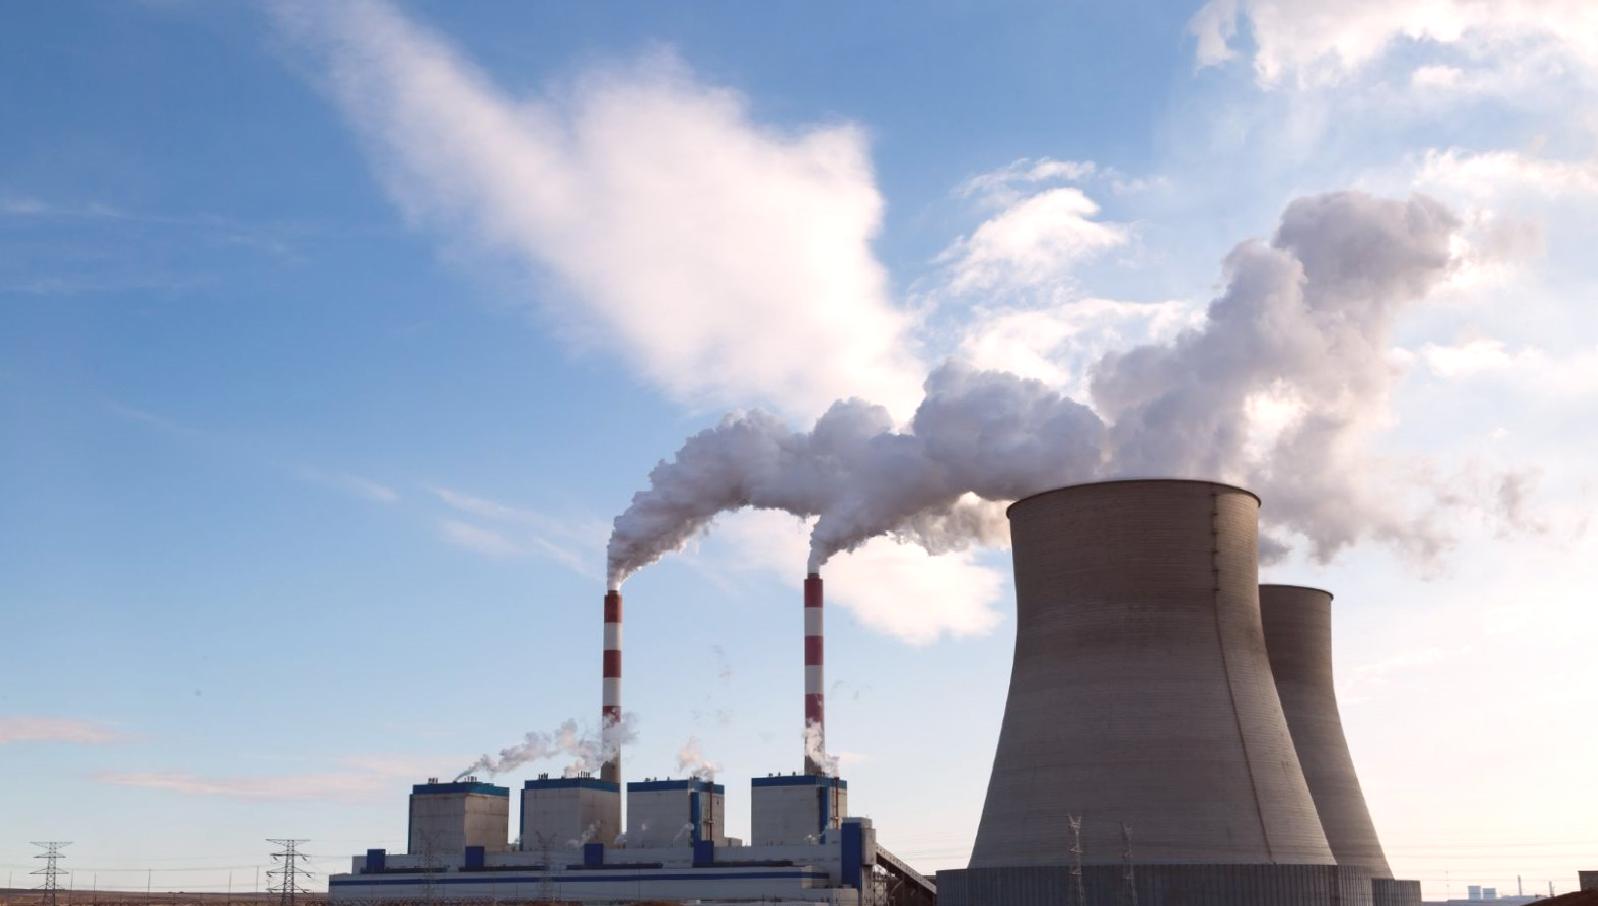 “Termik santrallere verilen havamızı kirletme müsaadesi kabul edilemez” (Termik santraller ömrü tehdit ediyor!)